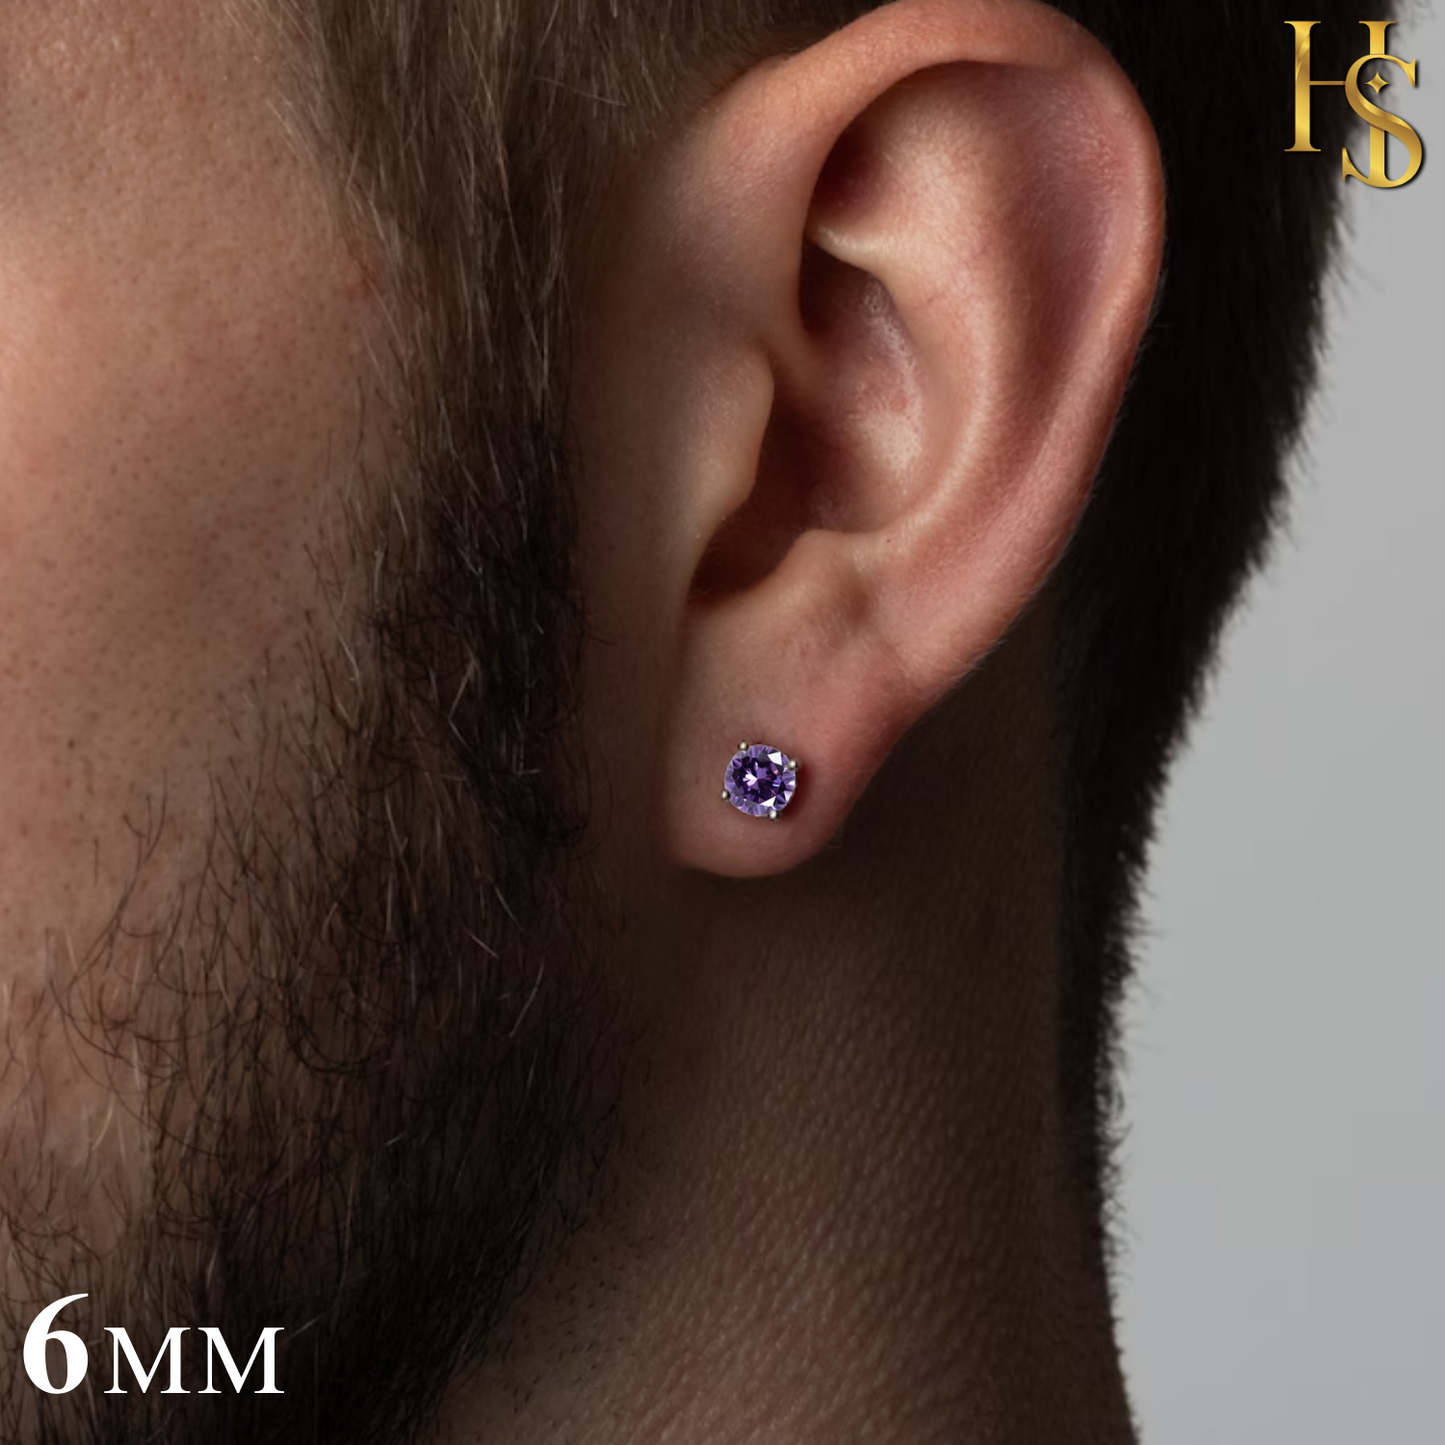 Men's Solitaire Stud Earring - 925 Silver - Birthstone June Alexandrite Zirconia - 1 Piece